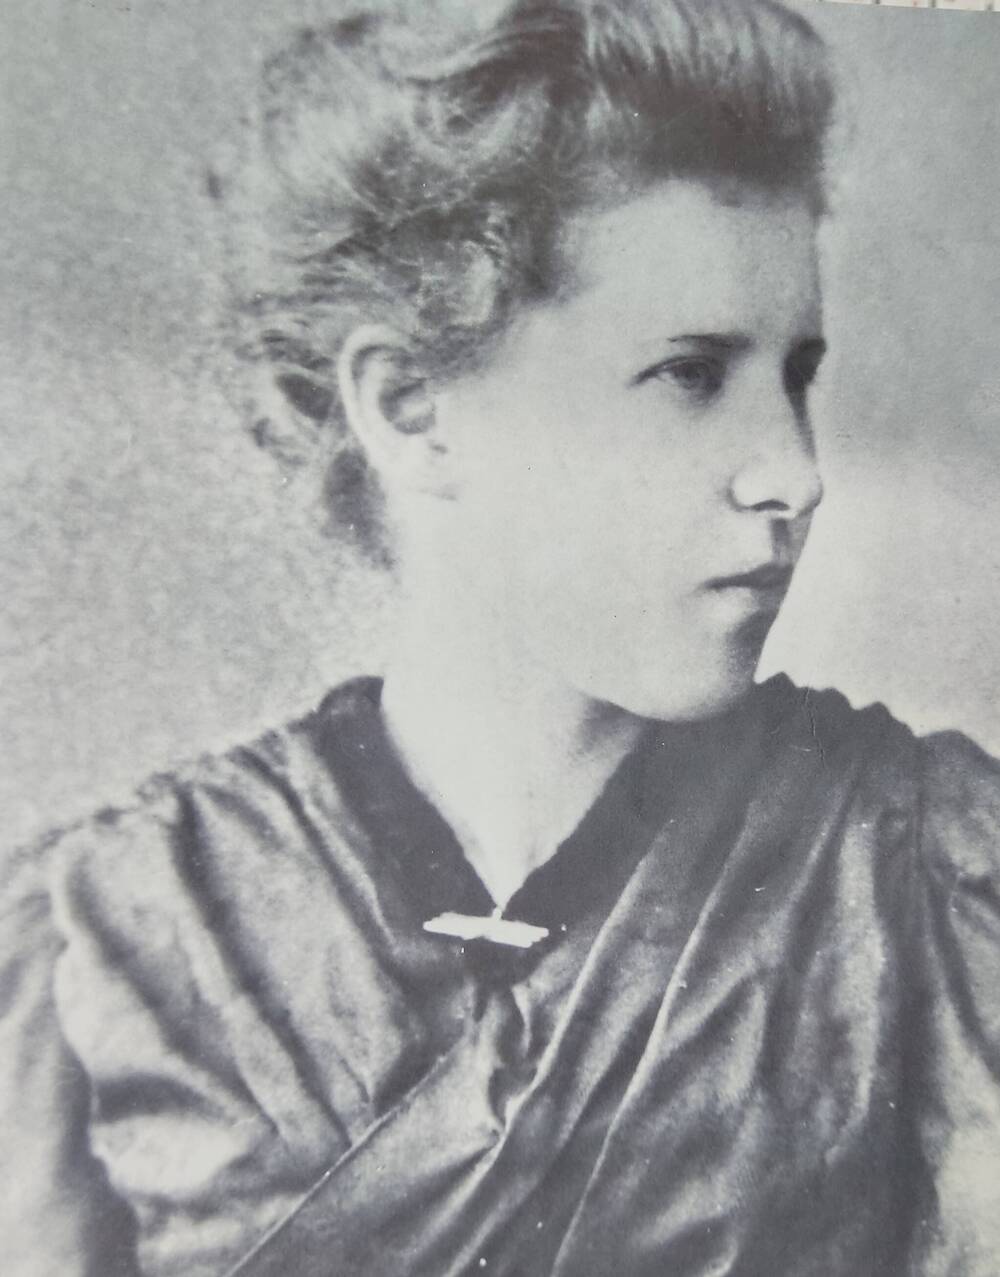 Фотопортрет копия, черно-белое, Высокова Апполинария Яковлевна ( Царевская ) - матушка  умерла в 36 лет  1914г .похоронена в г Мелекессе.